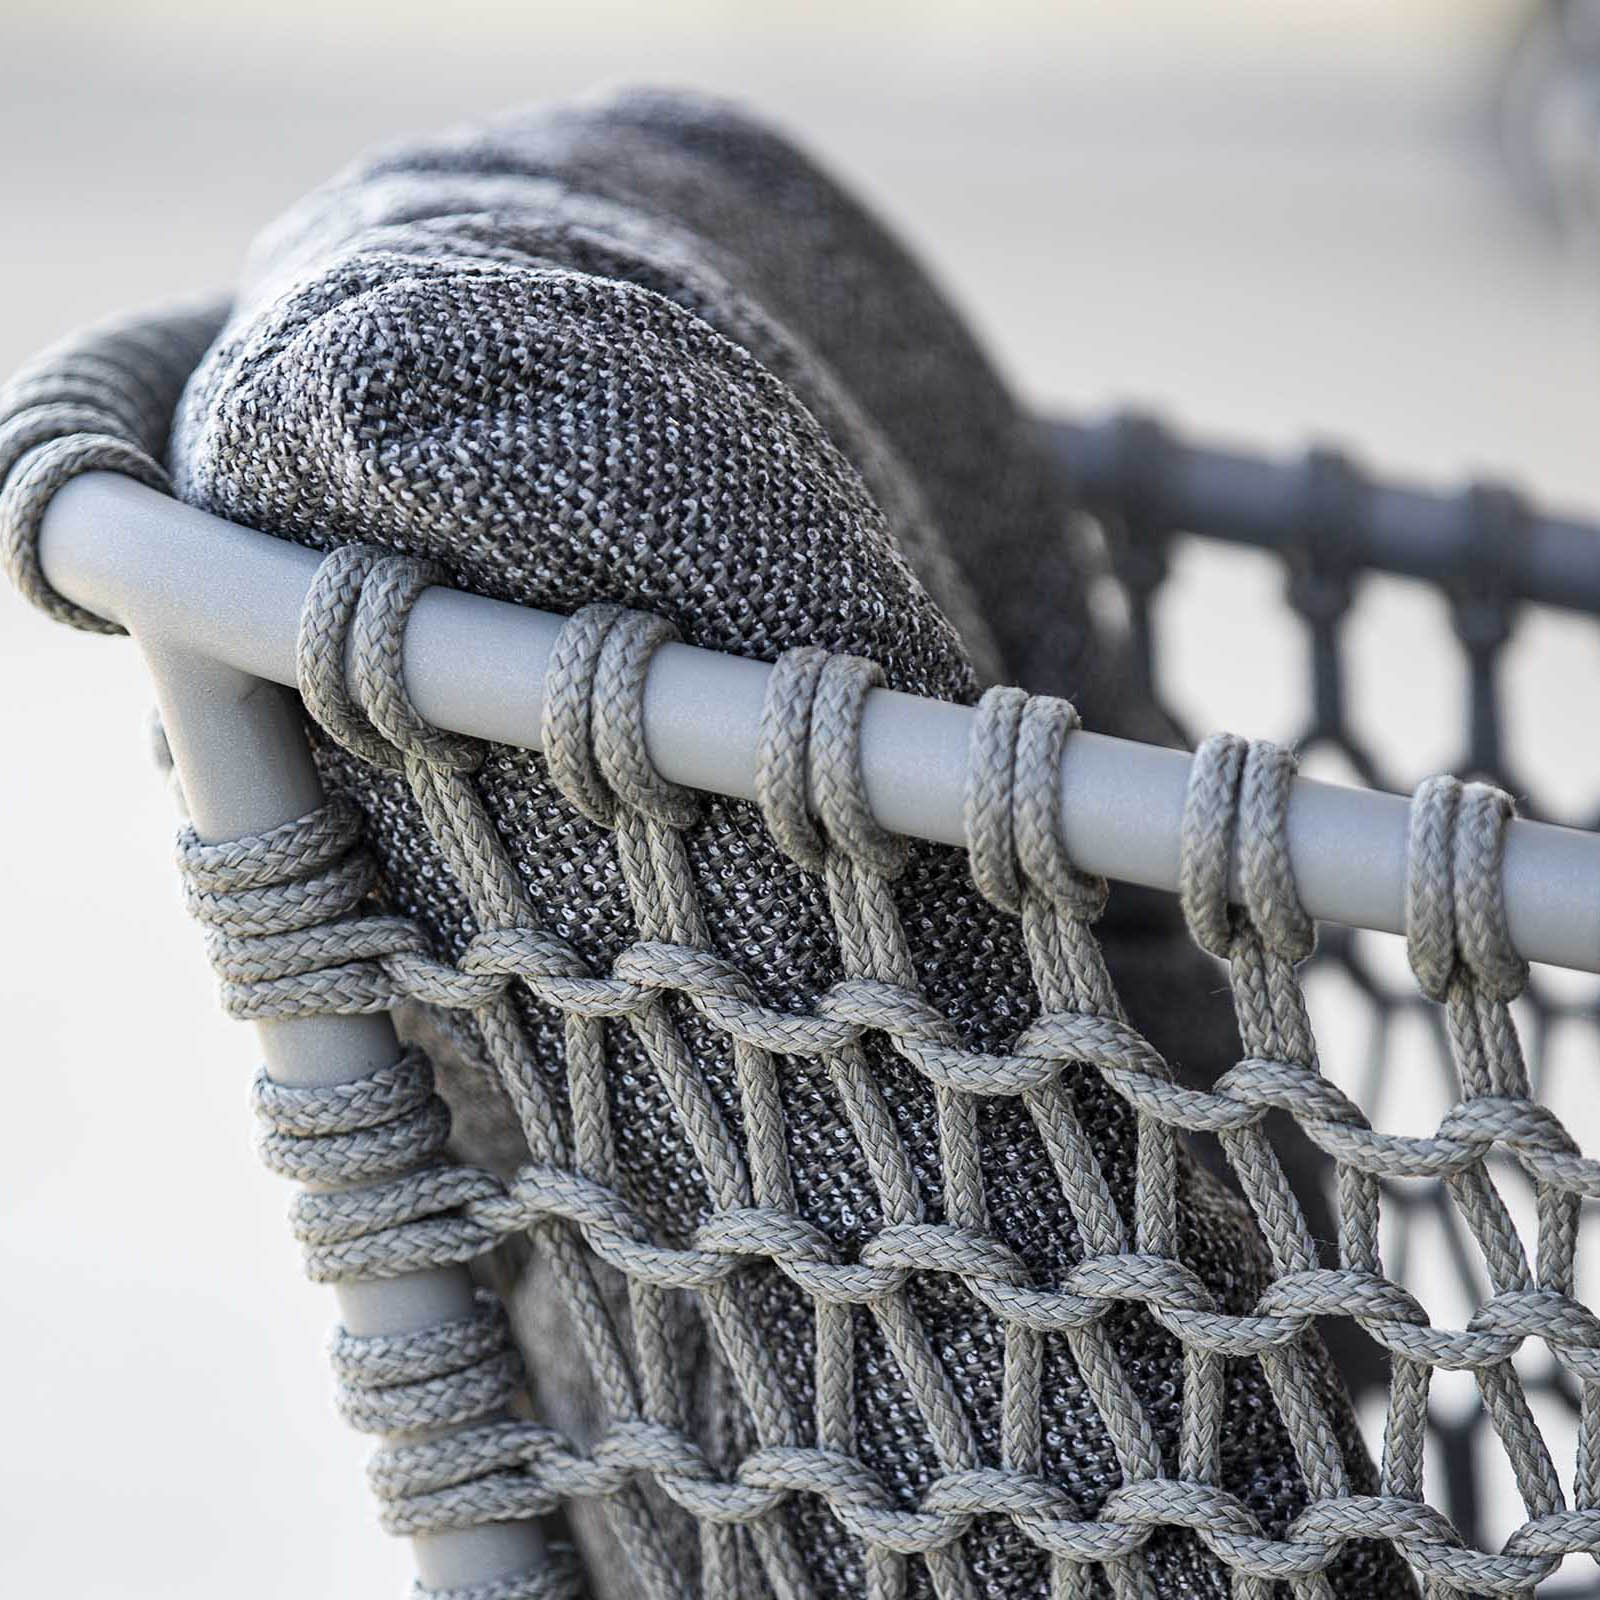 Ocean Stuhl aus Cane-line Soft Rope in Taupe mit Kissen aus Cane-line Wove in Dark Grey